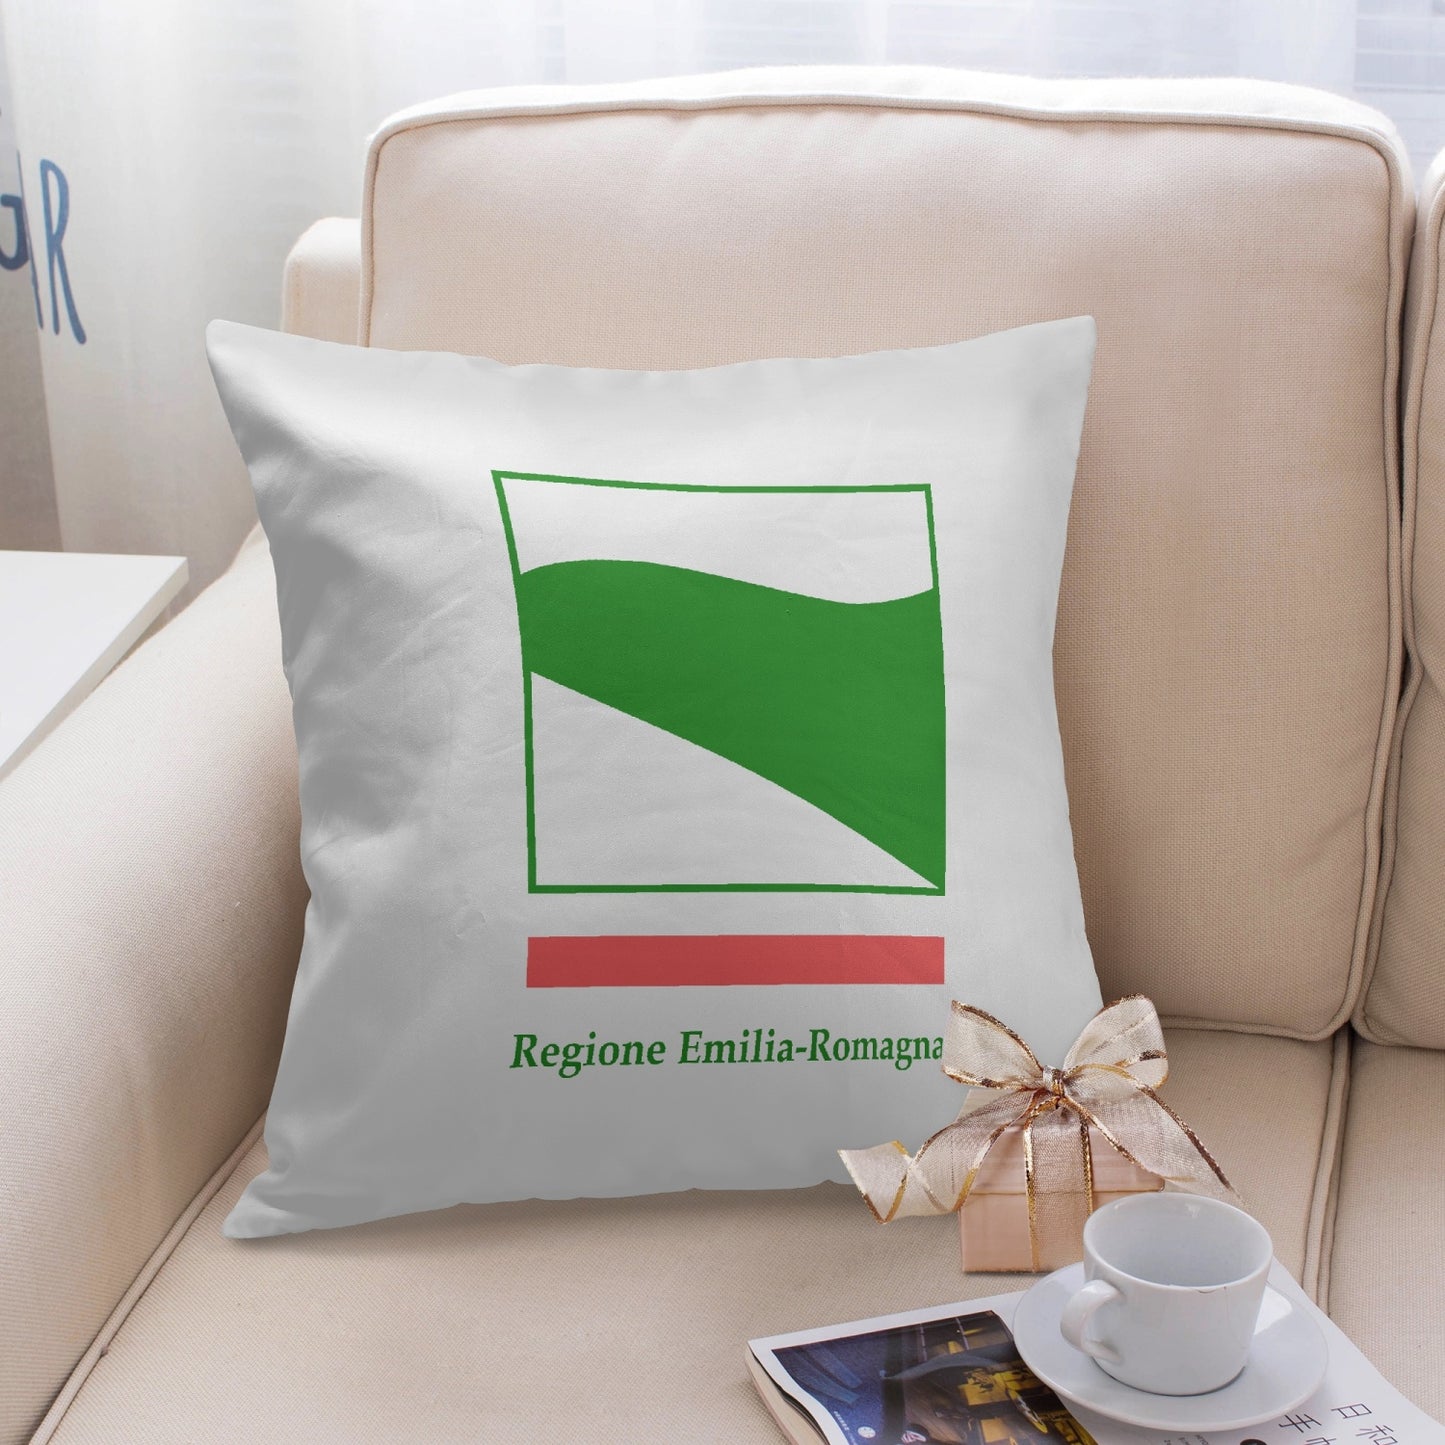 Emilia-Romagna Pillow Cover